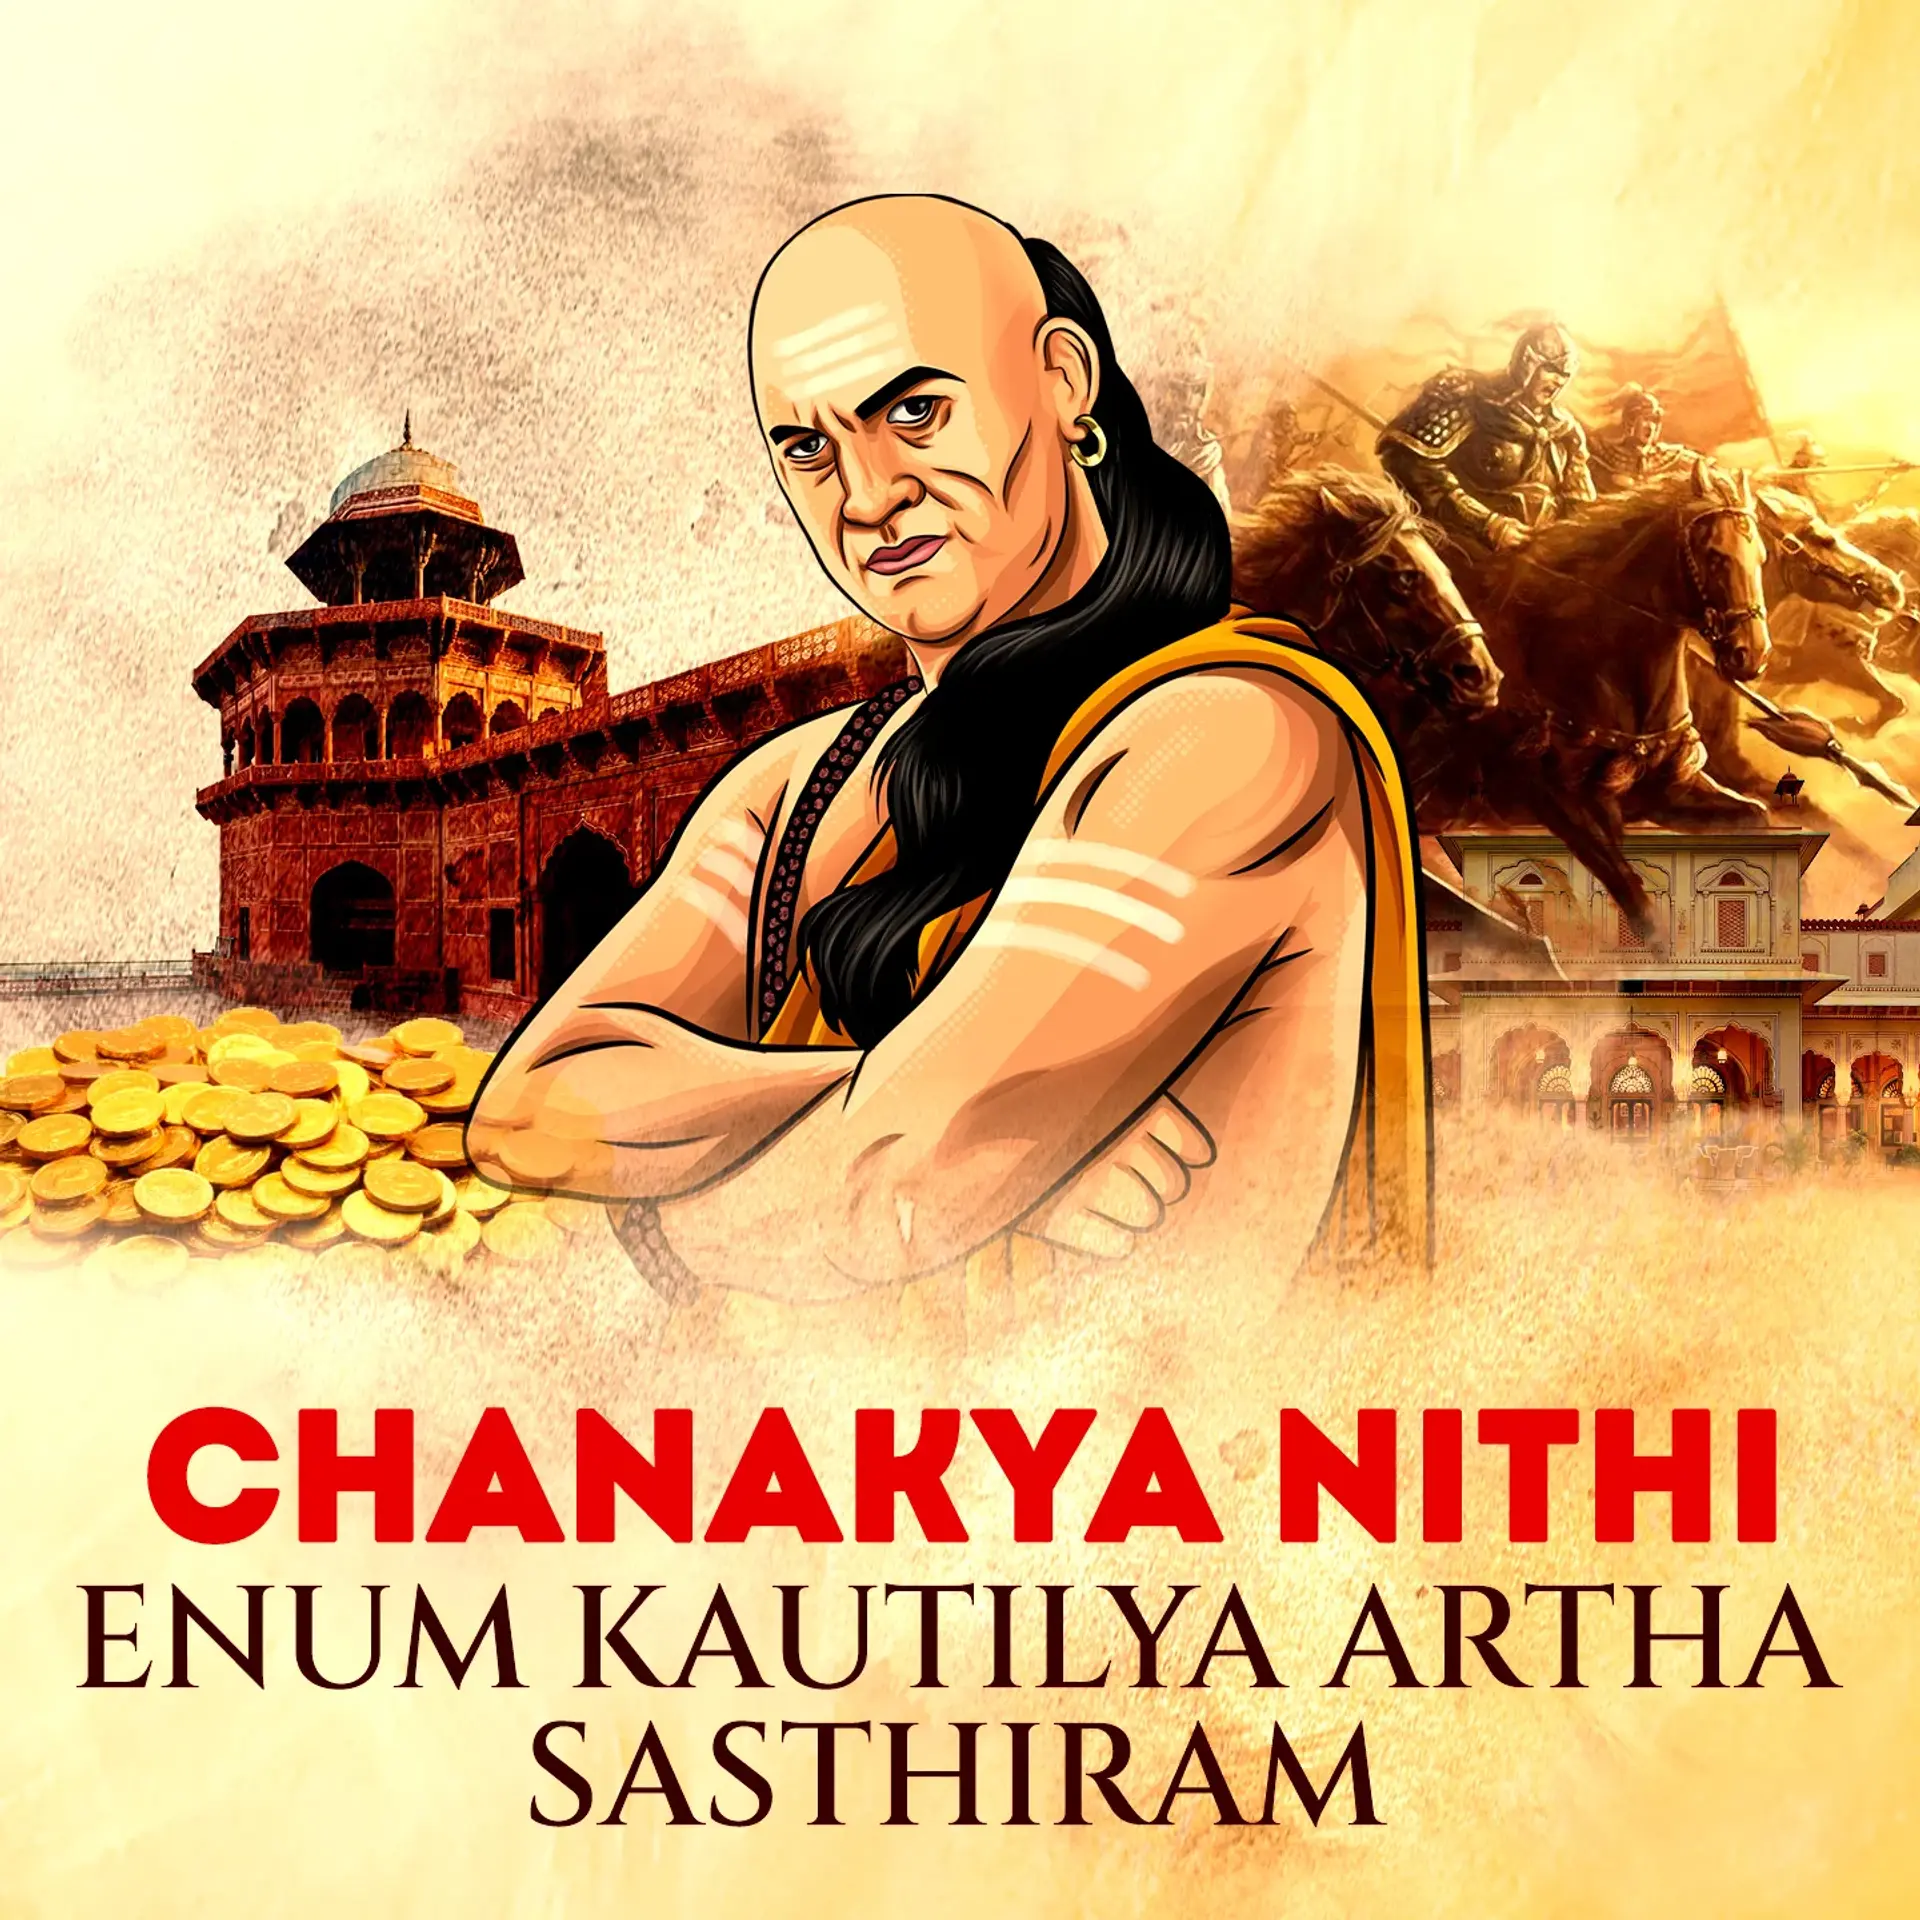 3. Chanakyarin Sinthanaigal